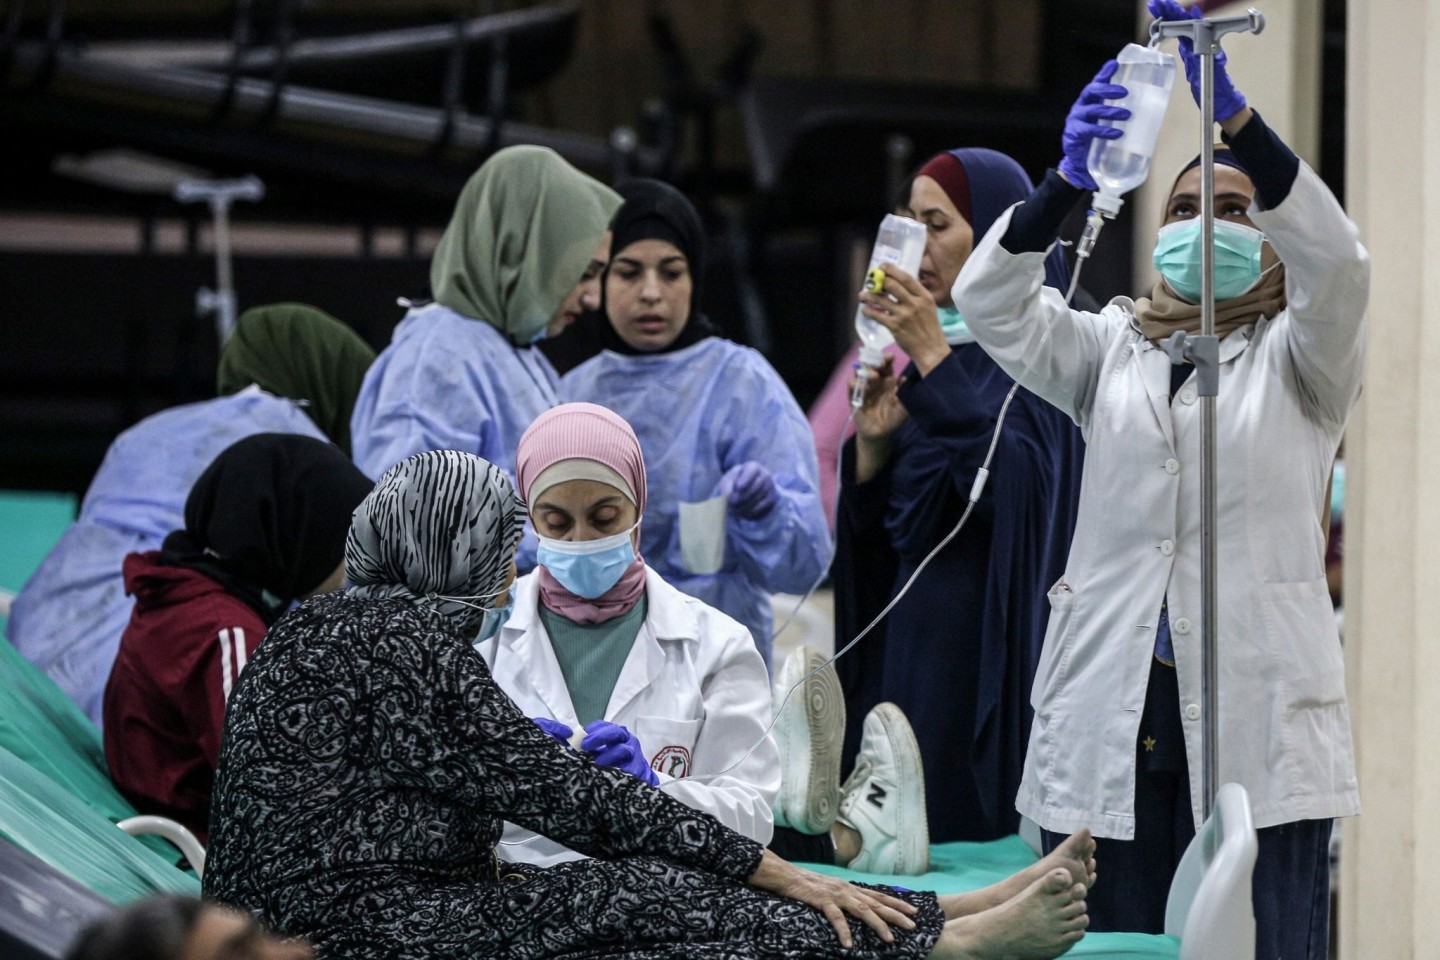 Libanesisches medizinisches Personal versorgt eine ältere Frau, die Opfer eines Choleraausbruchs geworden ist.